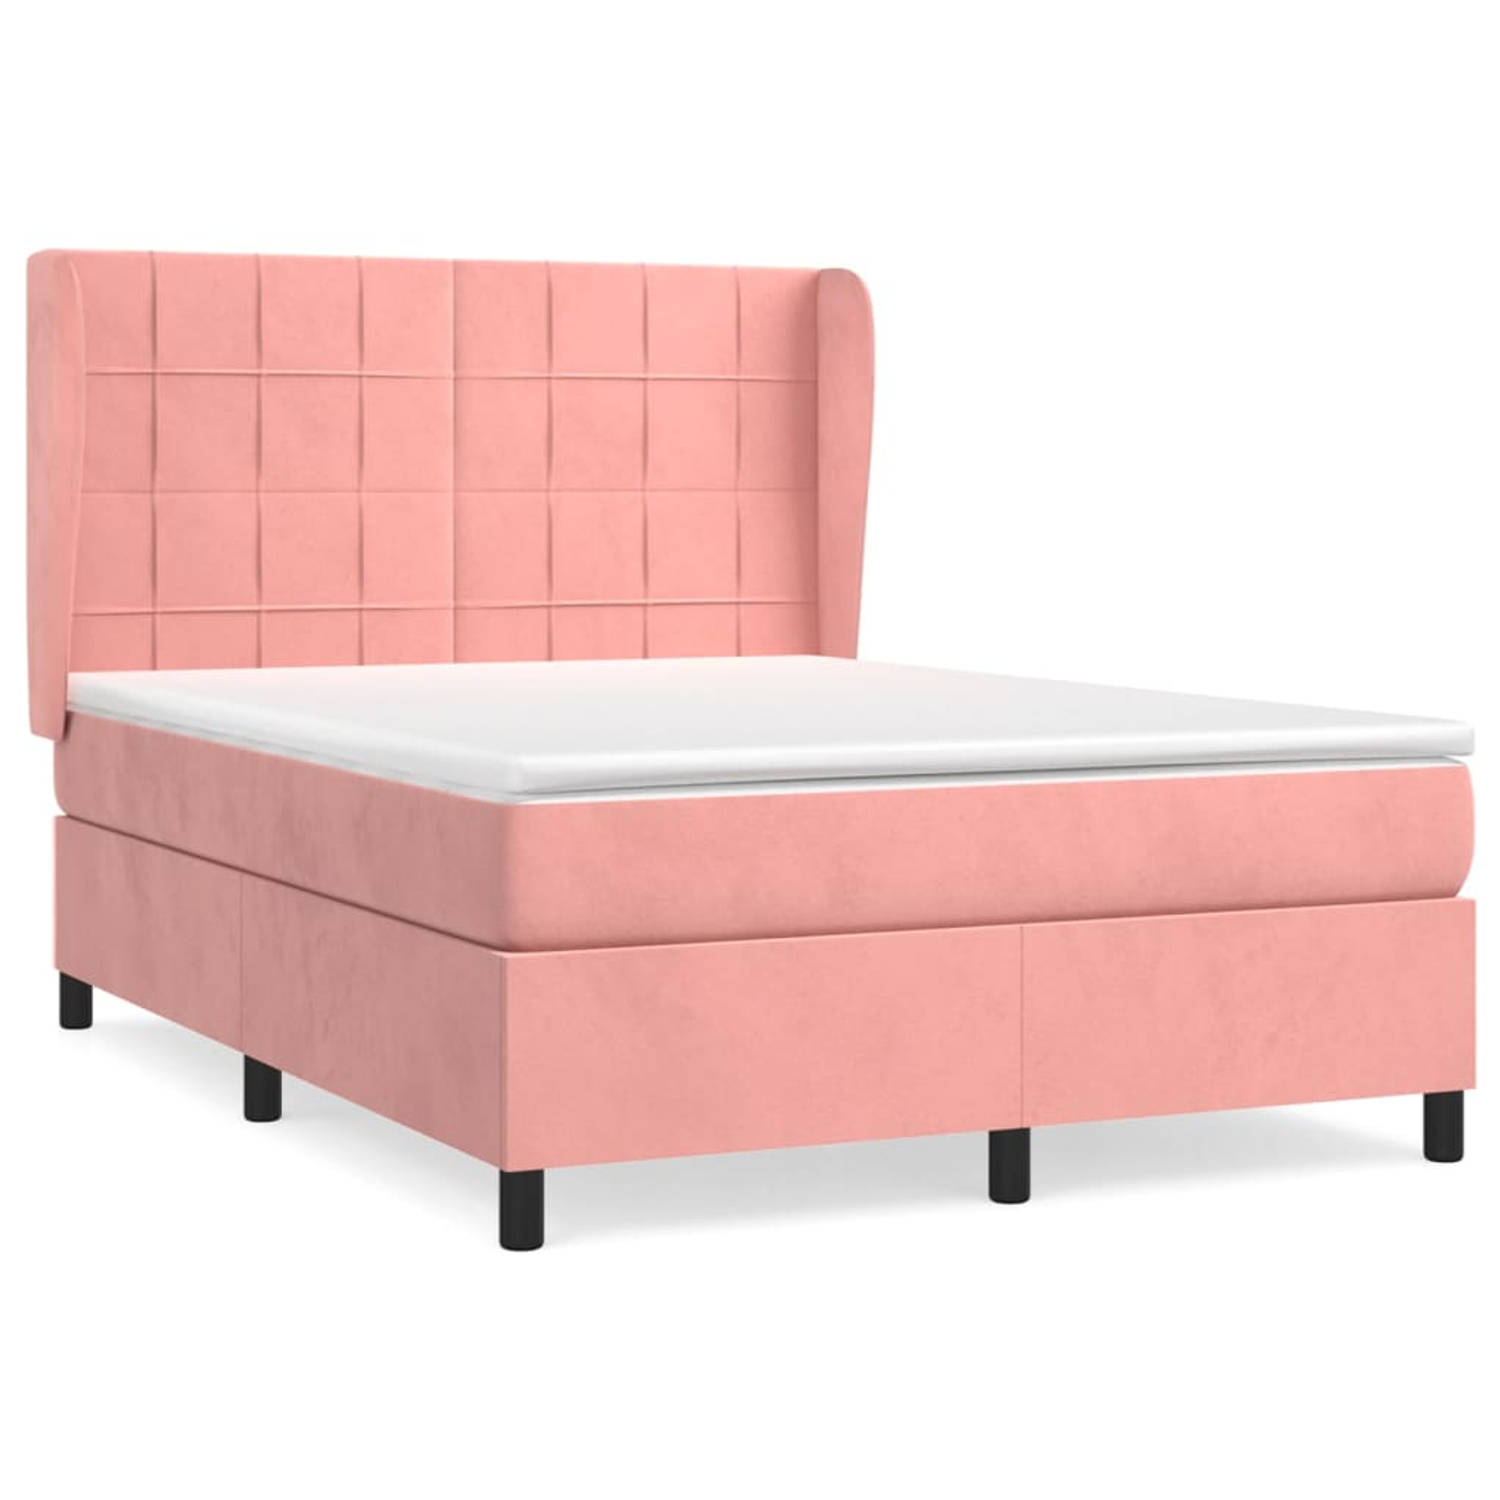 The Living Store Bed - Roze Fluweel - 193 x 147 x 118/128 cm - Pocketvering Matras - Middelharde Ondersteuning - Huidvriendelijk Topmatras